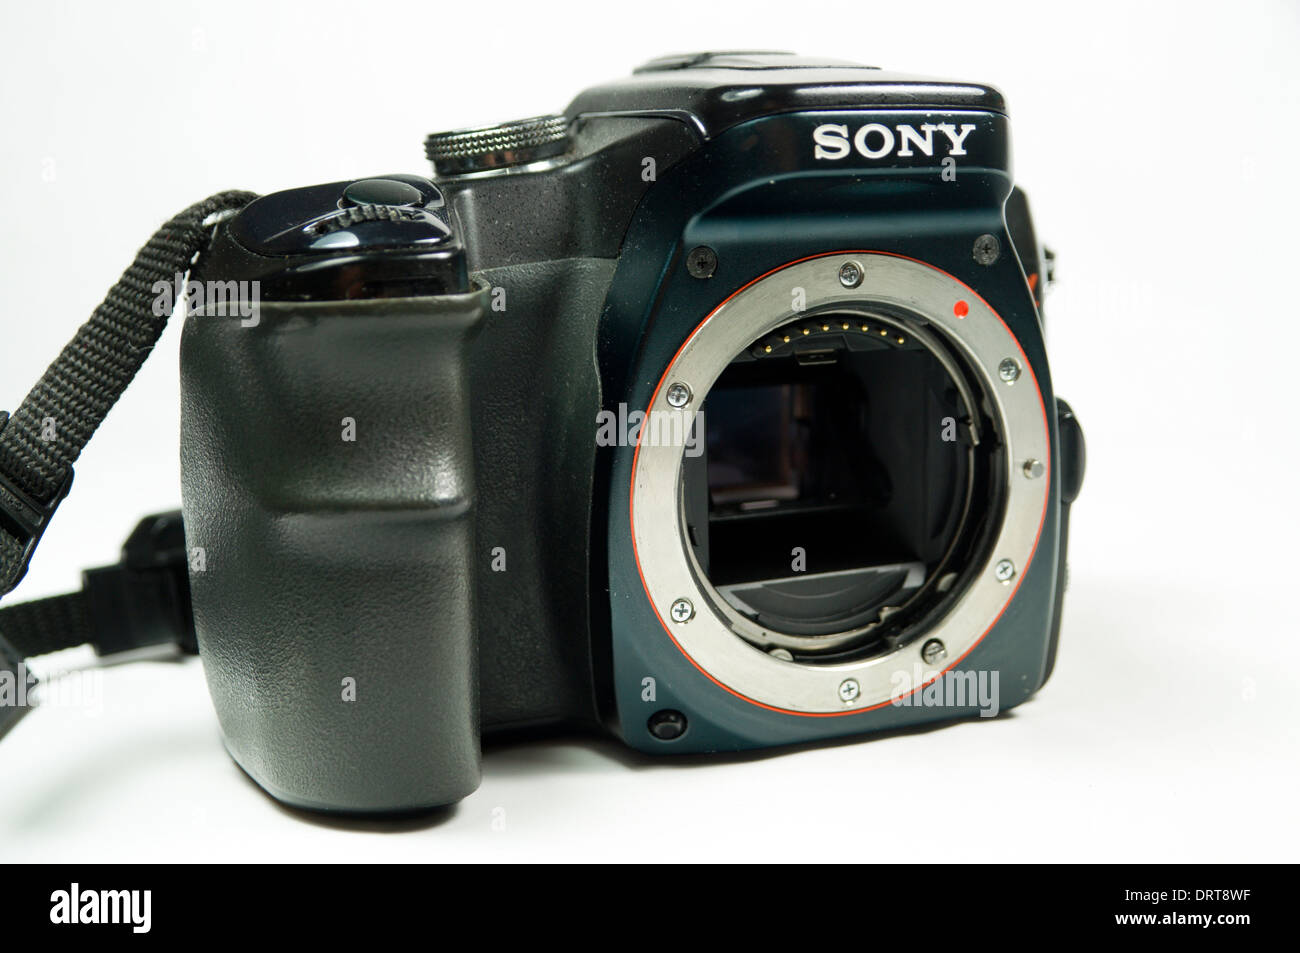 Sony Alpha 100 fotocamera reflex digitale di corpo. Foto Stock